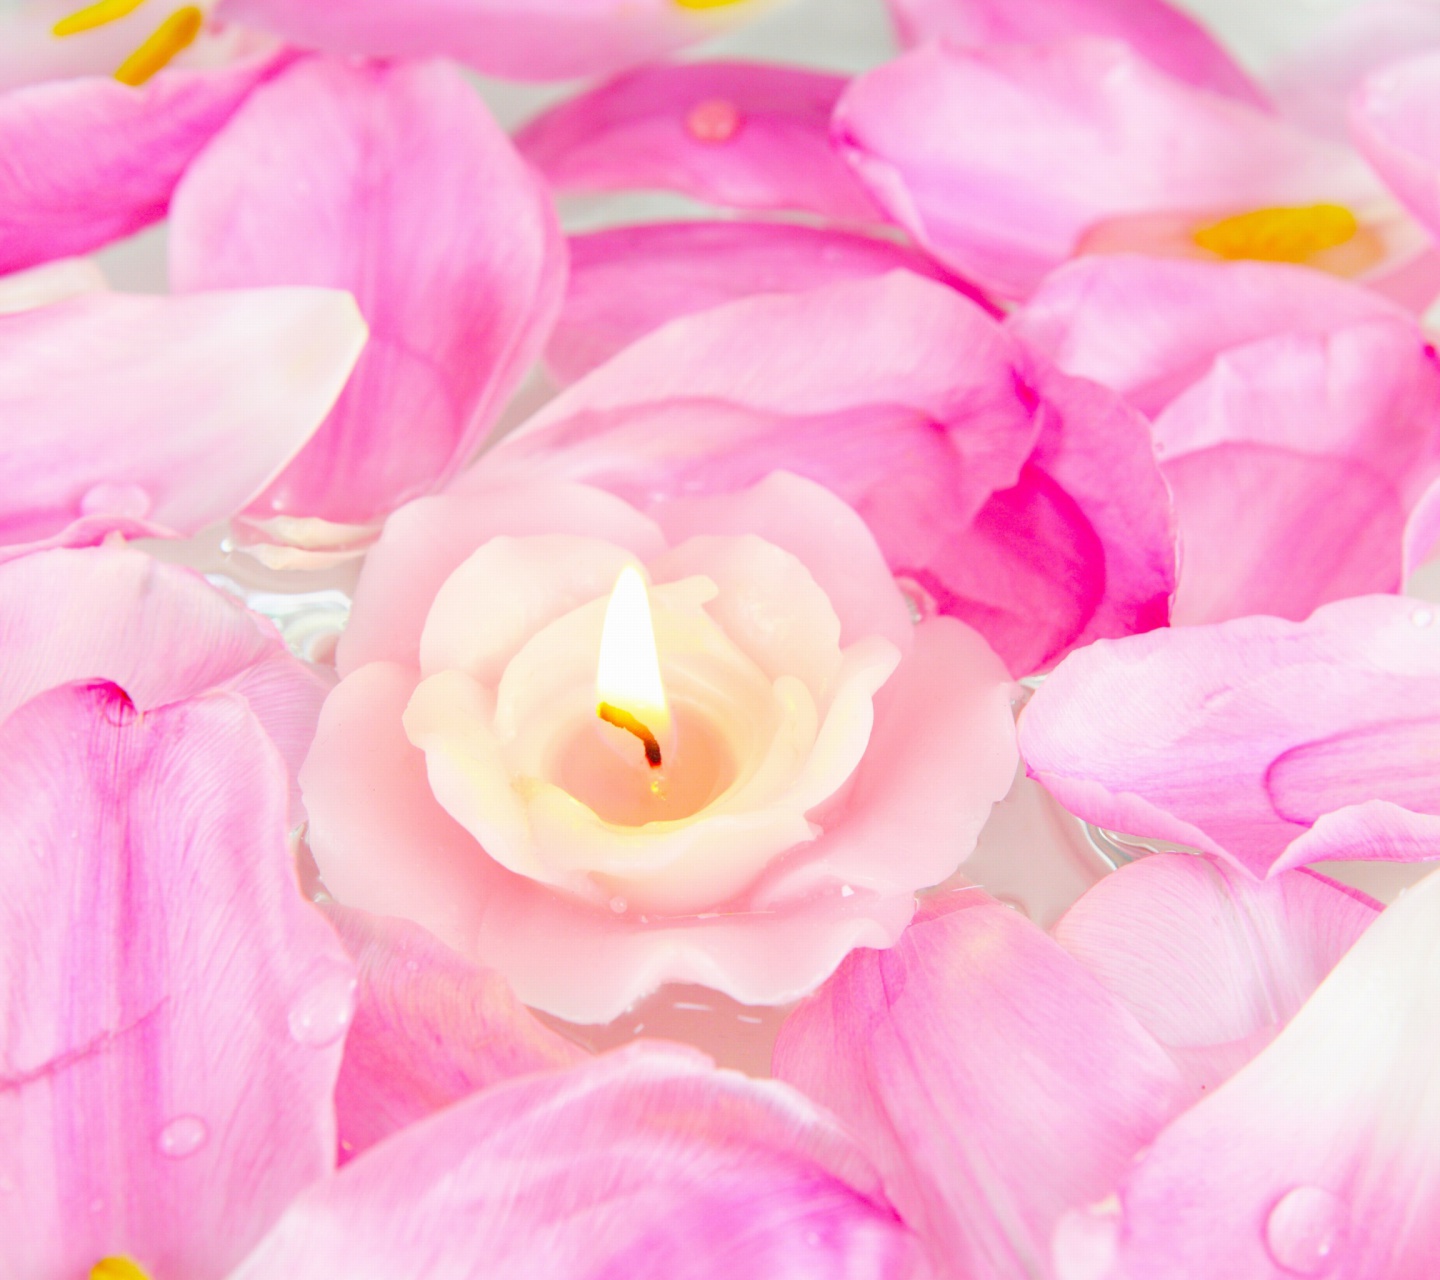 Candle on lotus petals screenshot #1 1440x1280